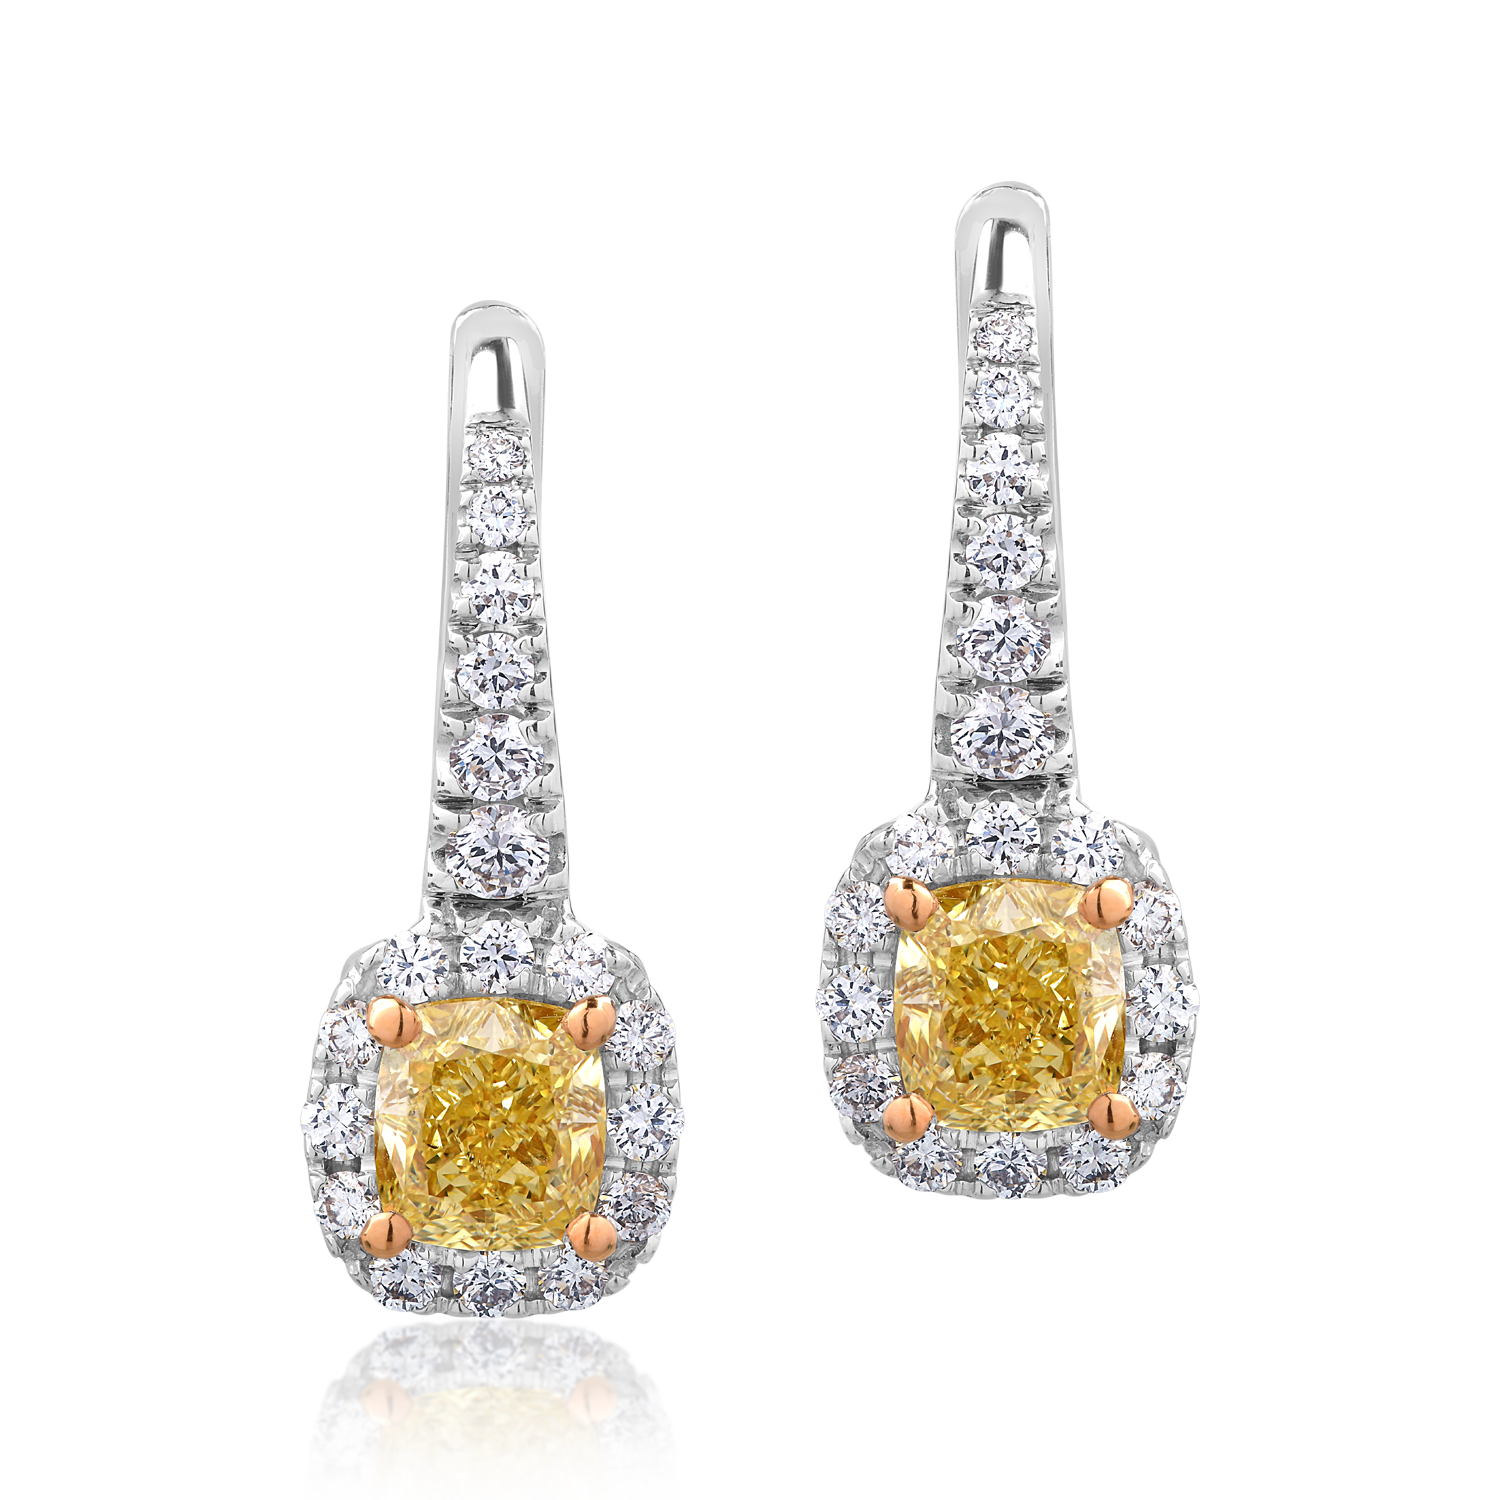 Cercei din aur alb de 18K cu diamante fancy-galbene de 1.19ct si diamante transparente de 0.52ct 0.52ct poza noua reduceri 2022